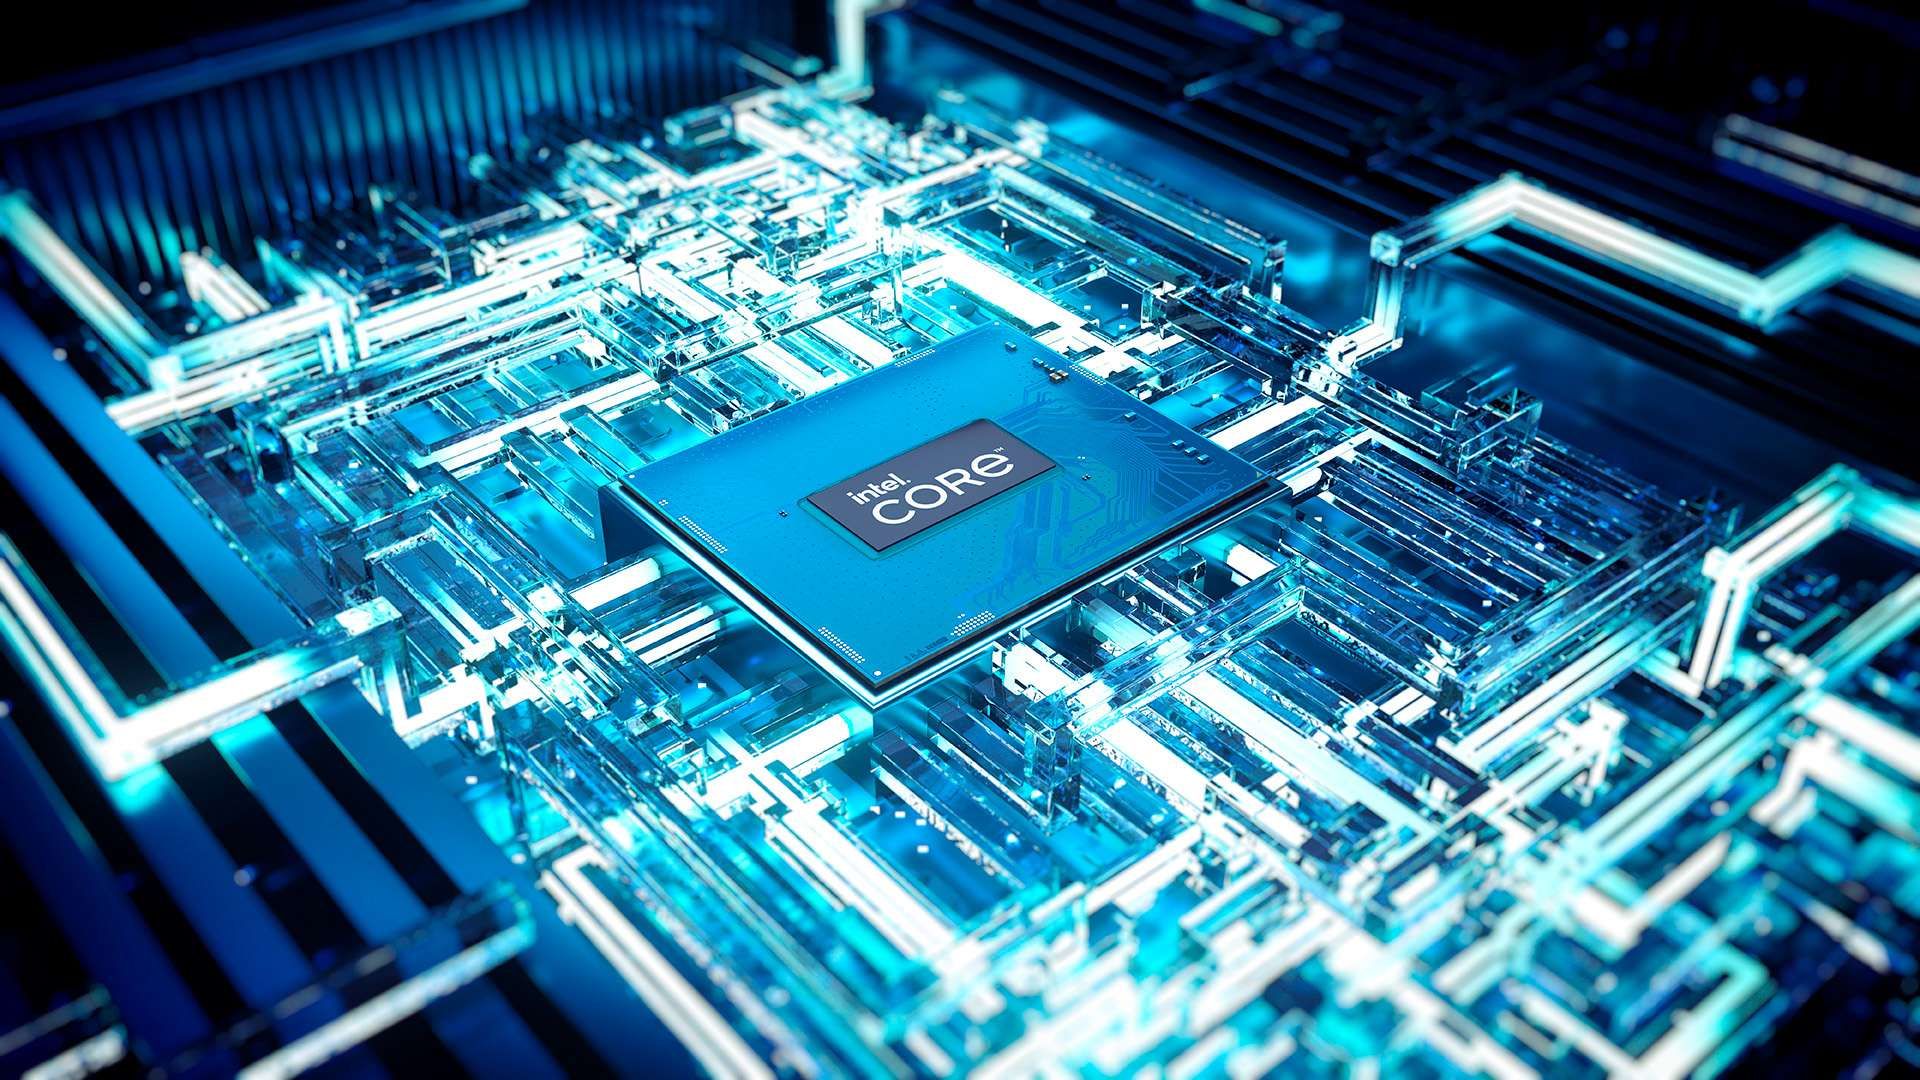 Wysiłki Intela mające na celu stabilizację najnowszych procesorów